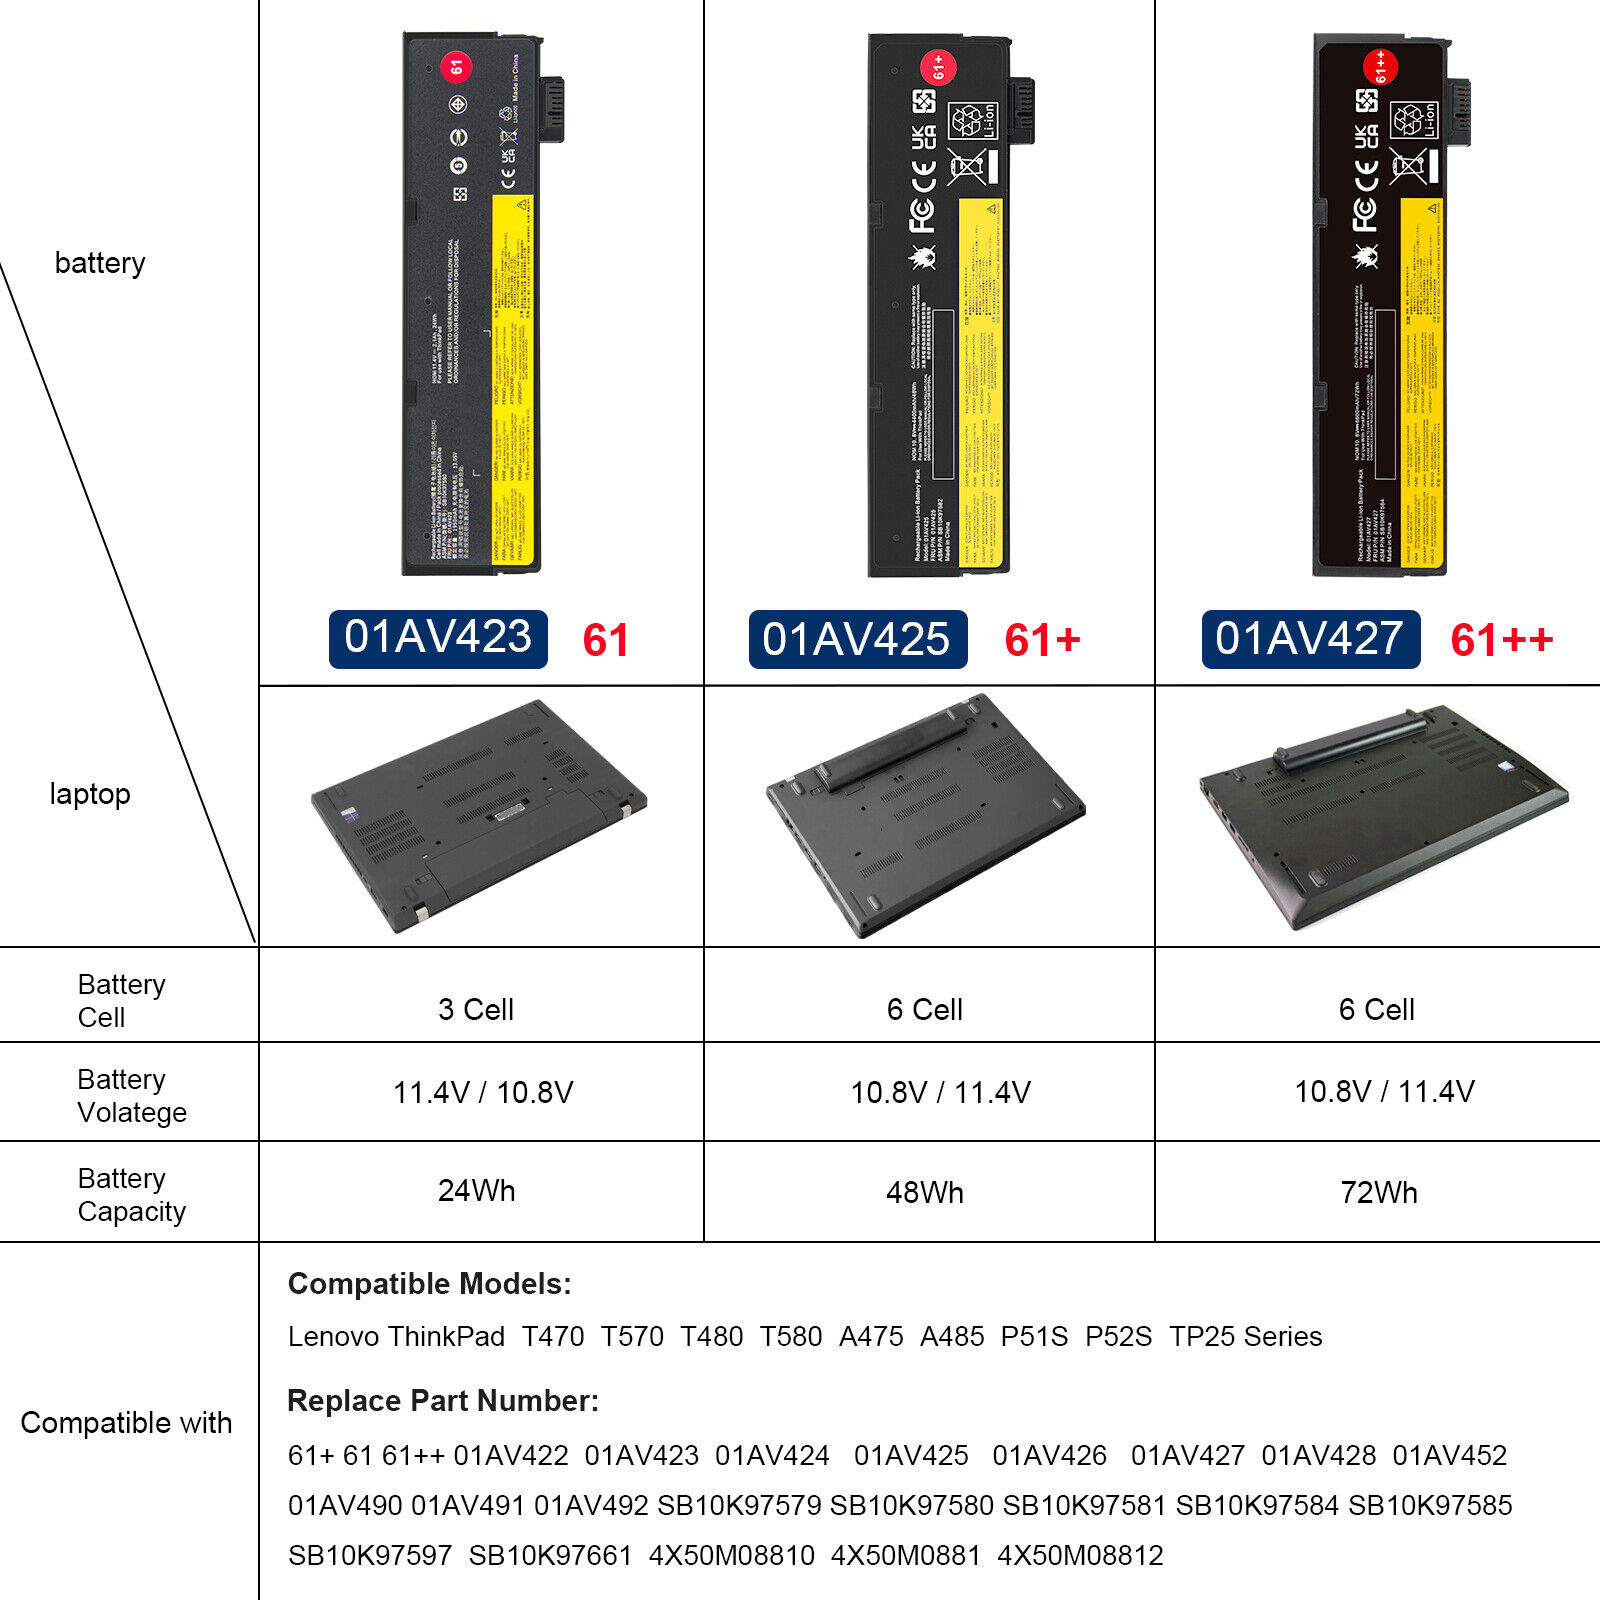 61++ Battery For Lenovo Thinkpad T470 T480 T570 T580 P51s P52s 01AV427 01AV423